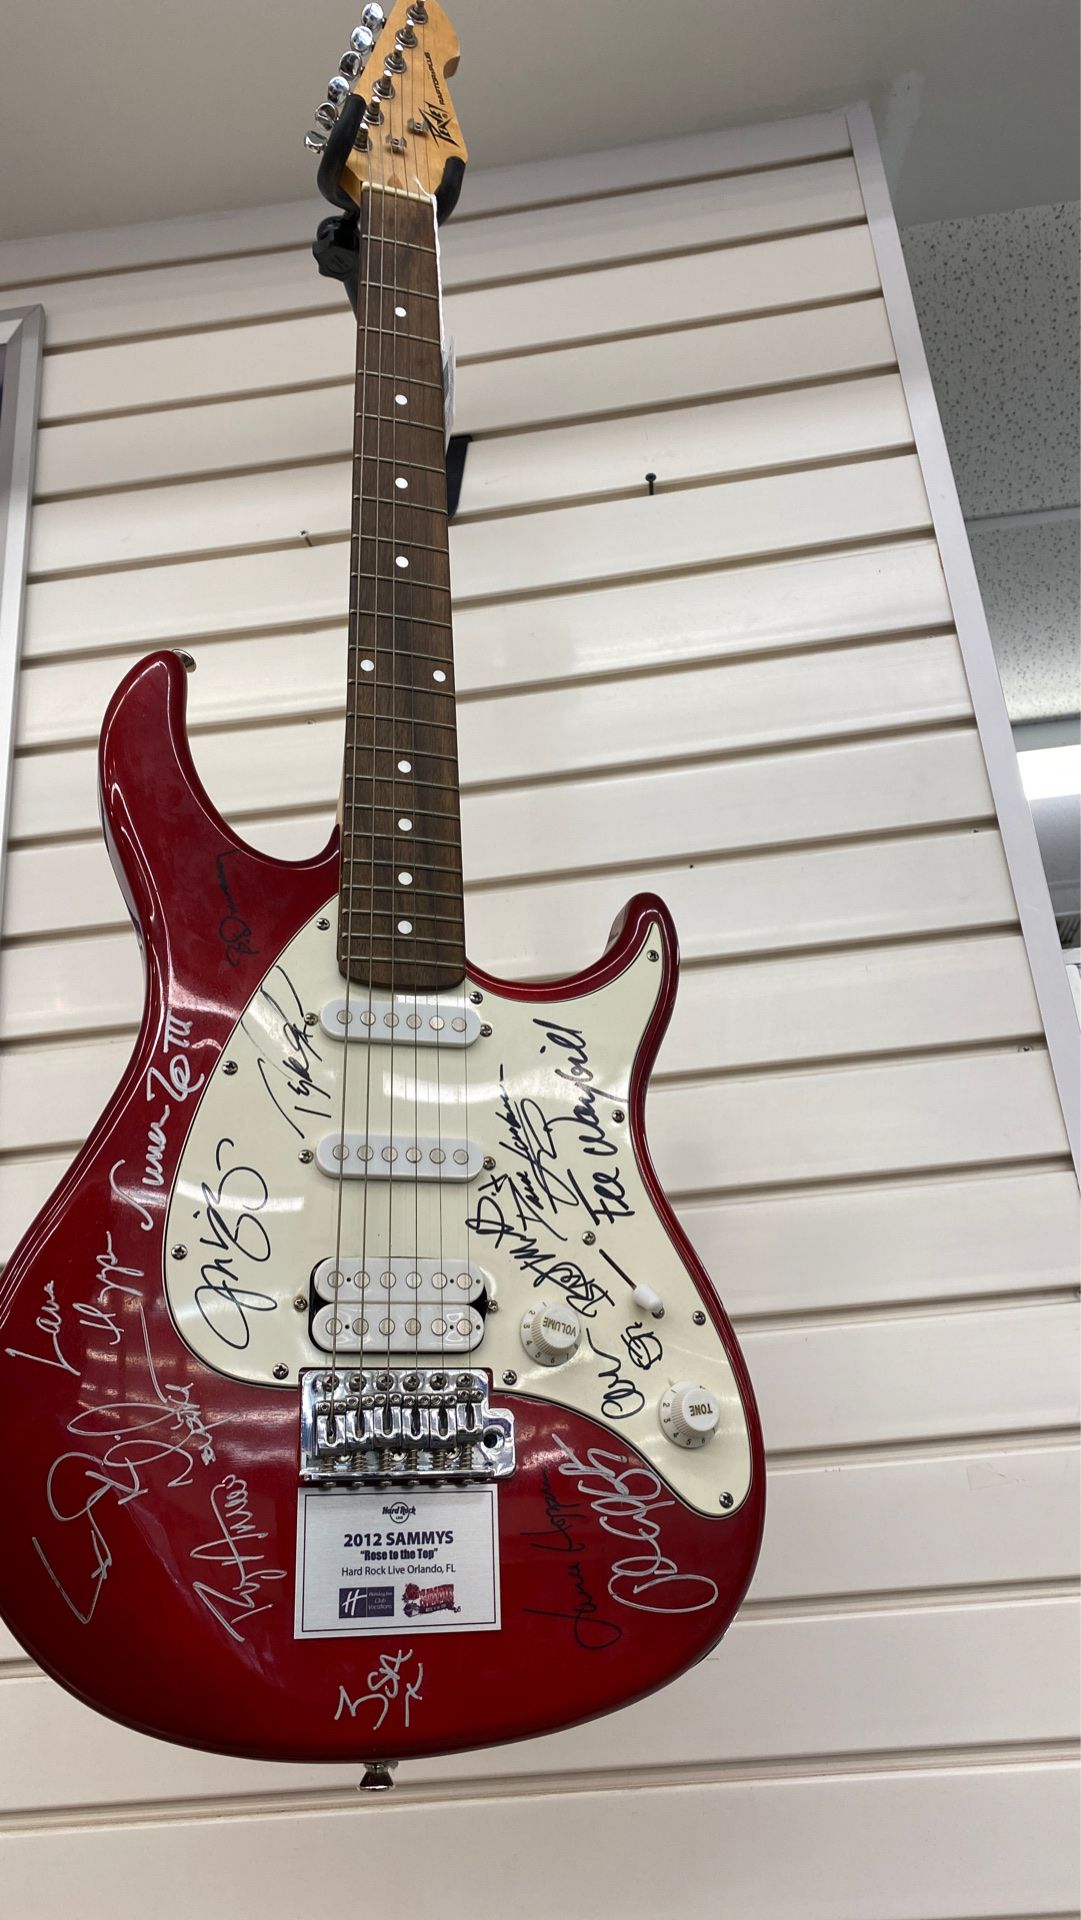 Autographed 80’s rocker Electric Guitar Ref# 2807-405529-01